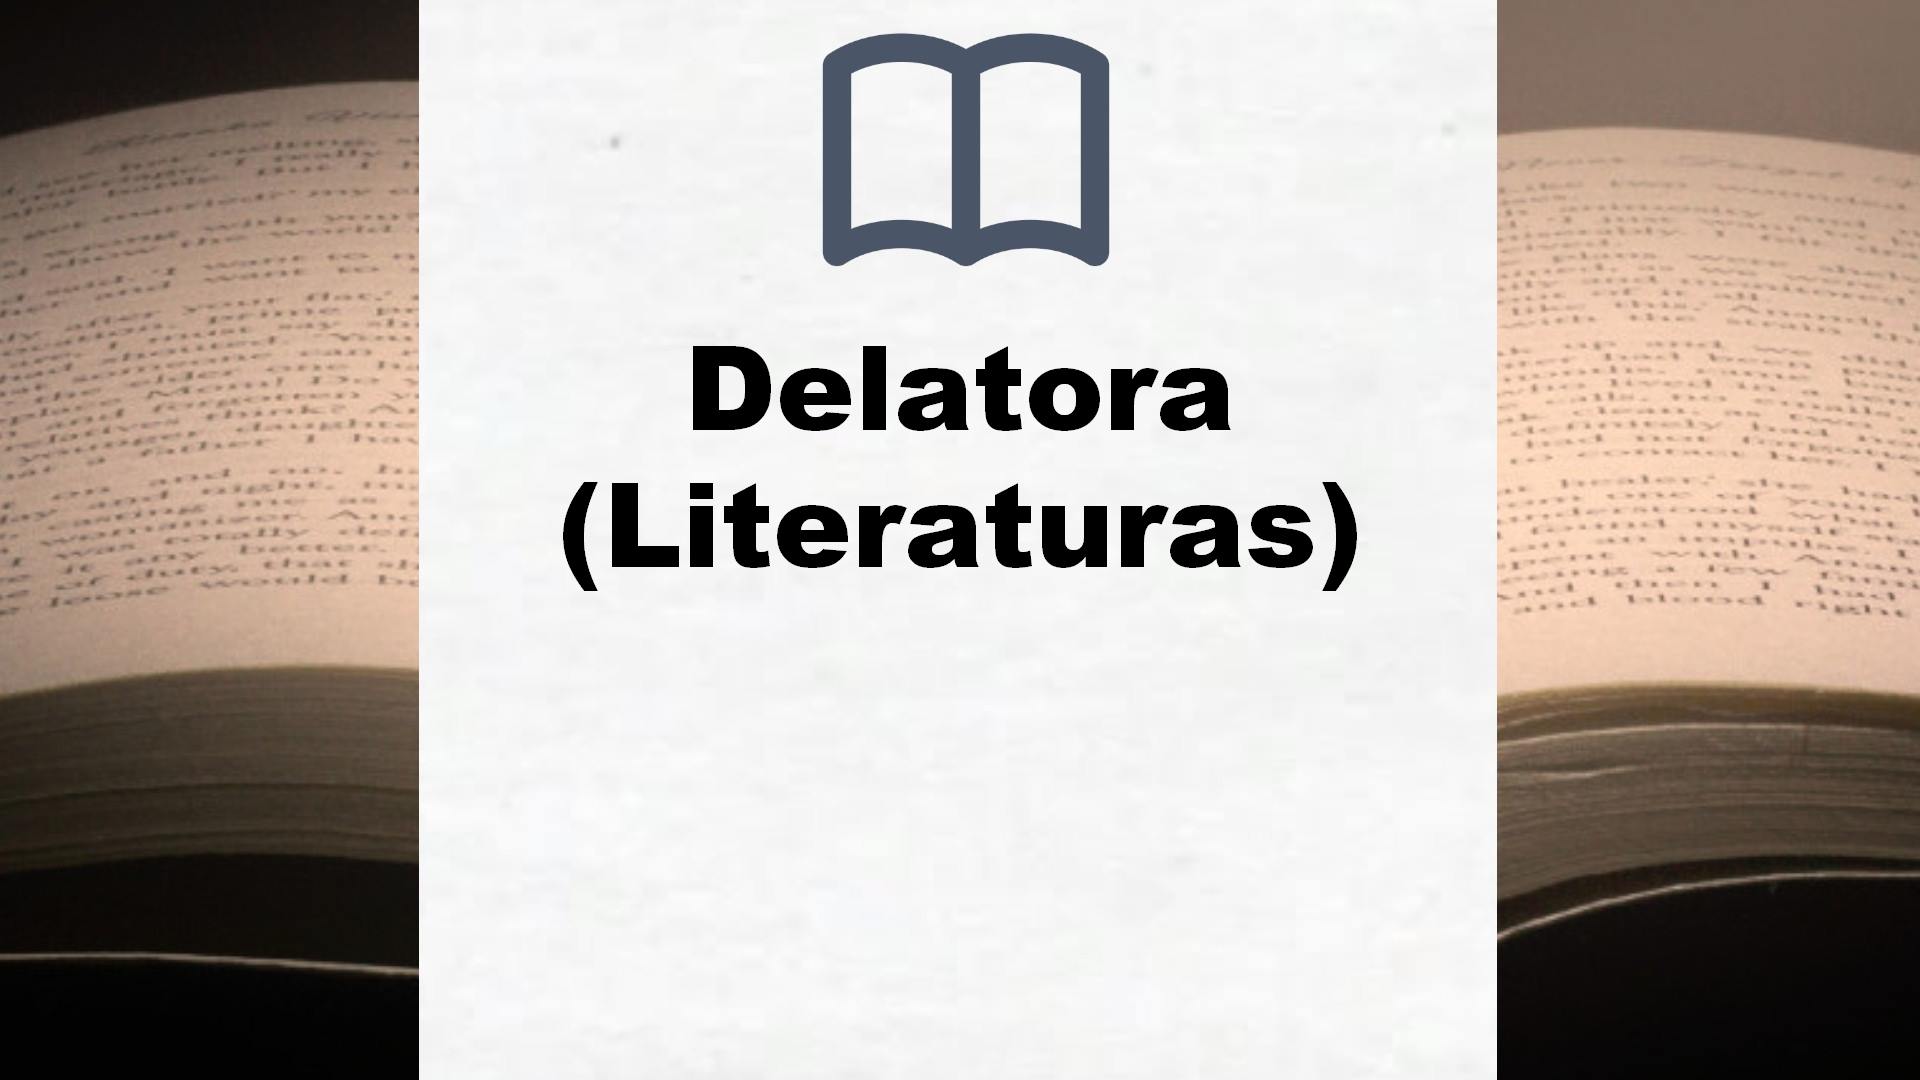 Delatora (Literaturas) – Reseña del libro